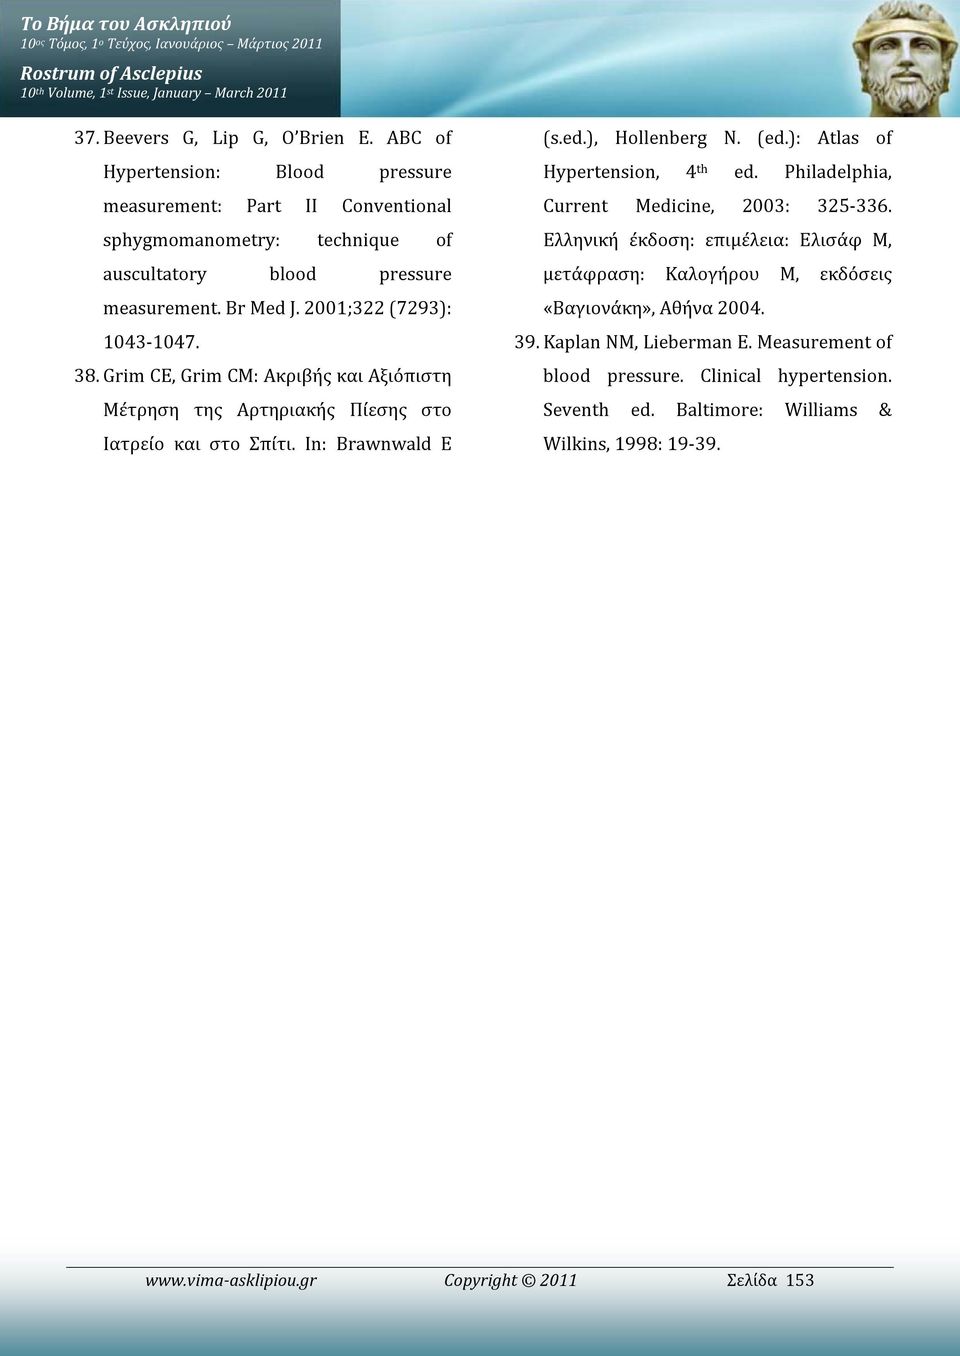 Grim CE, Grim CM: Ακριβής και Αξιόπιστη Μέτρηση της Αρτηριακής Πίεσης στο Ιατρείο και στο Σπίτι. In: Brawnwald E (s.ed.), Hollenberg N. (ed.): Atlas of Hypertension, 4 th ed.